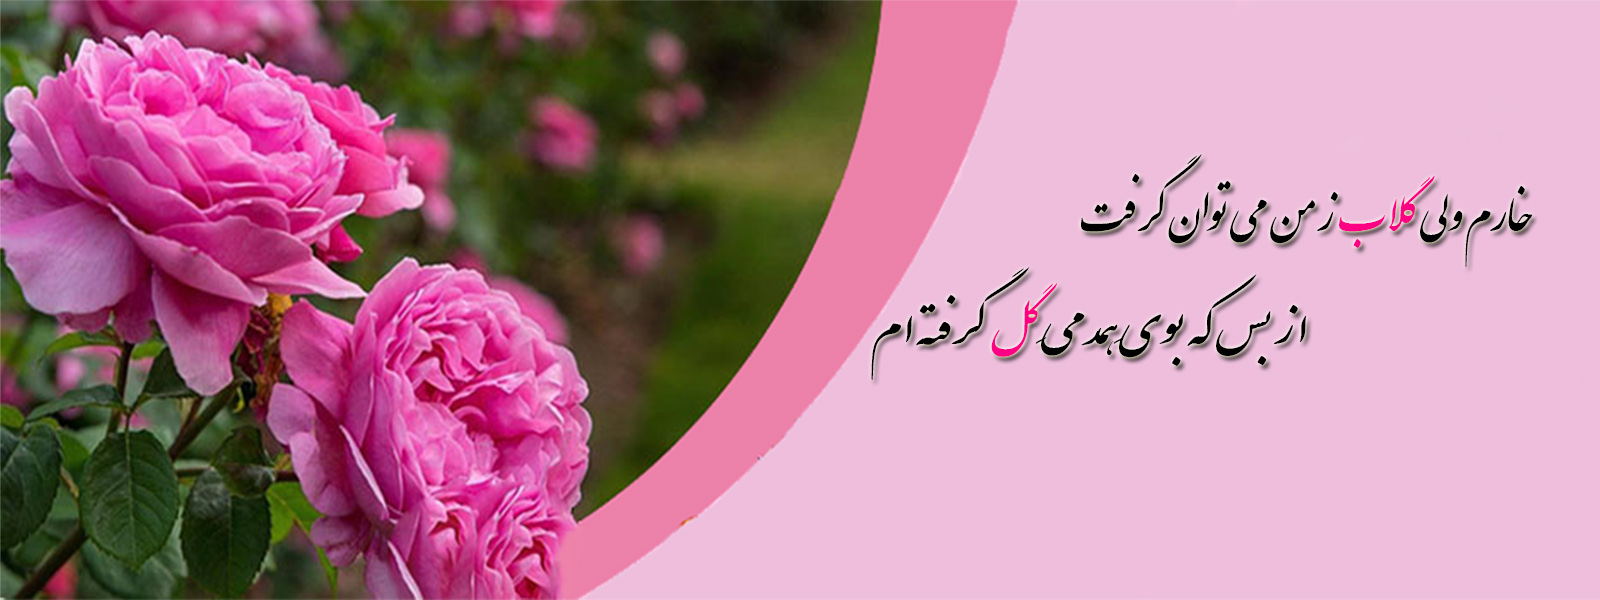 مراسم گلابگیری در کاشان از اوایل اردیبهشت تا اواسط خرداد ماه ادامه دارد. در این مدت جشنواره گل و گلاب در شهرستان کاشان برگزار می شود.